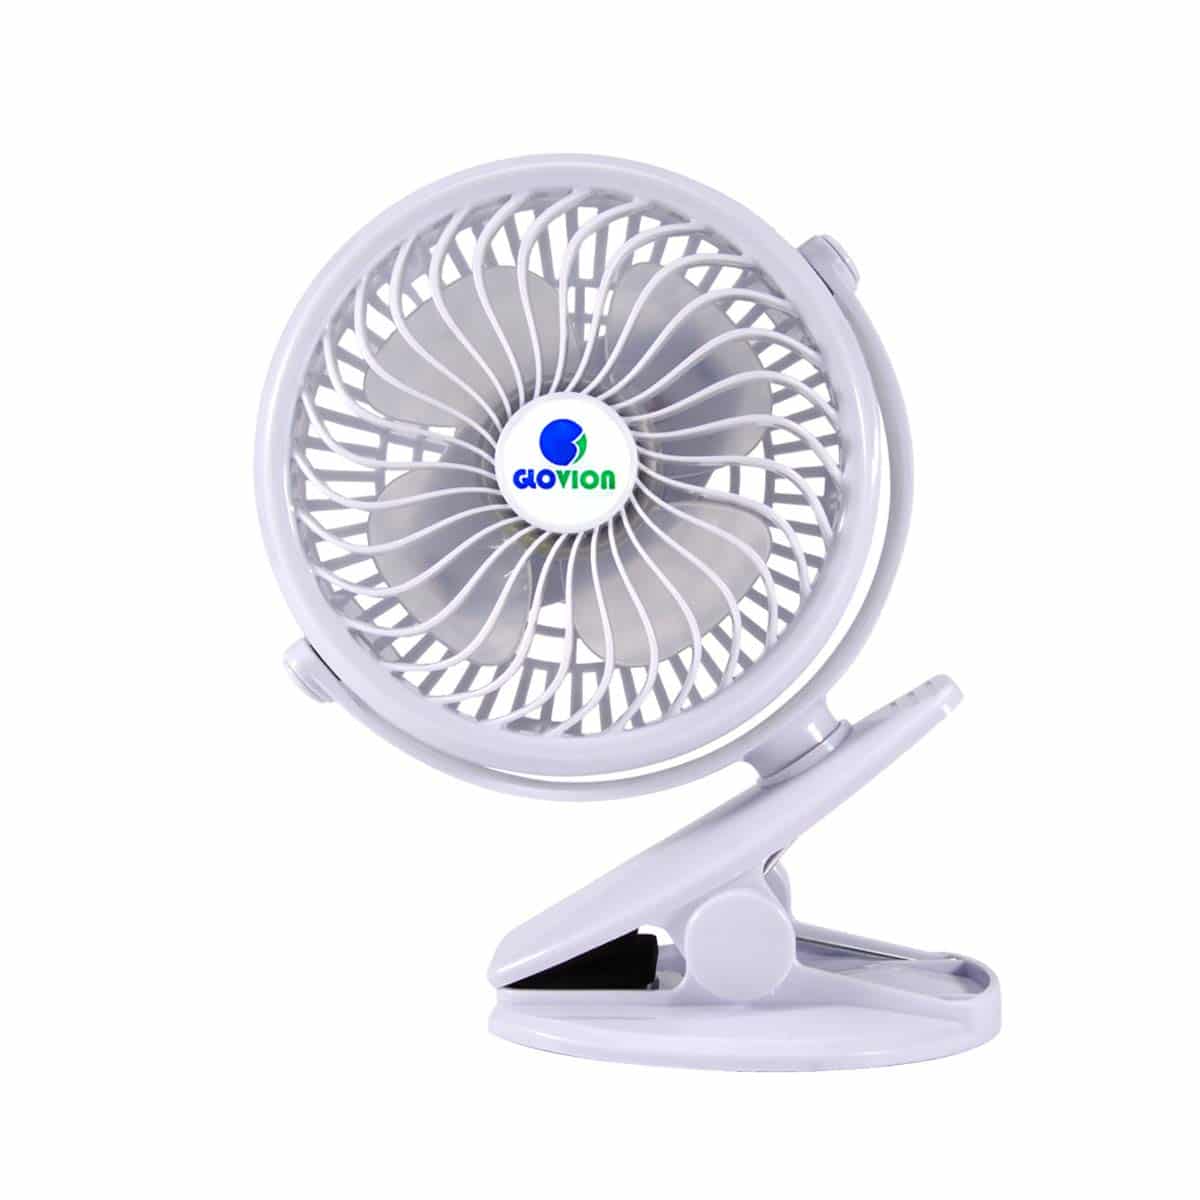 Glovion Clip-on Stroller Fan